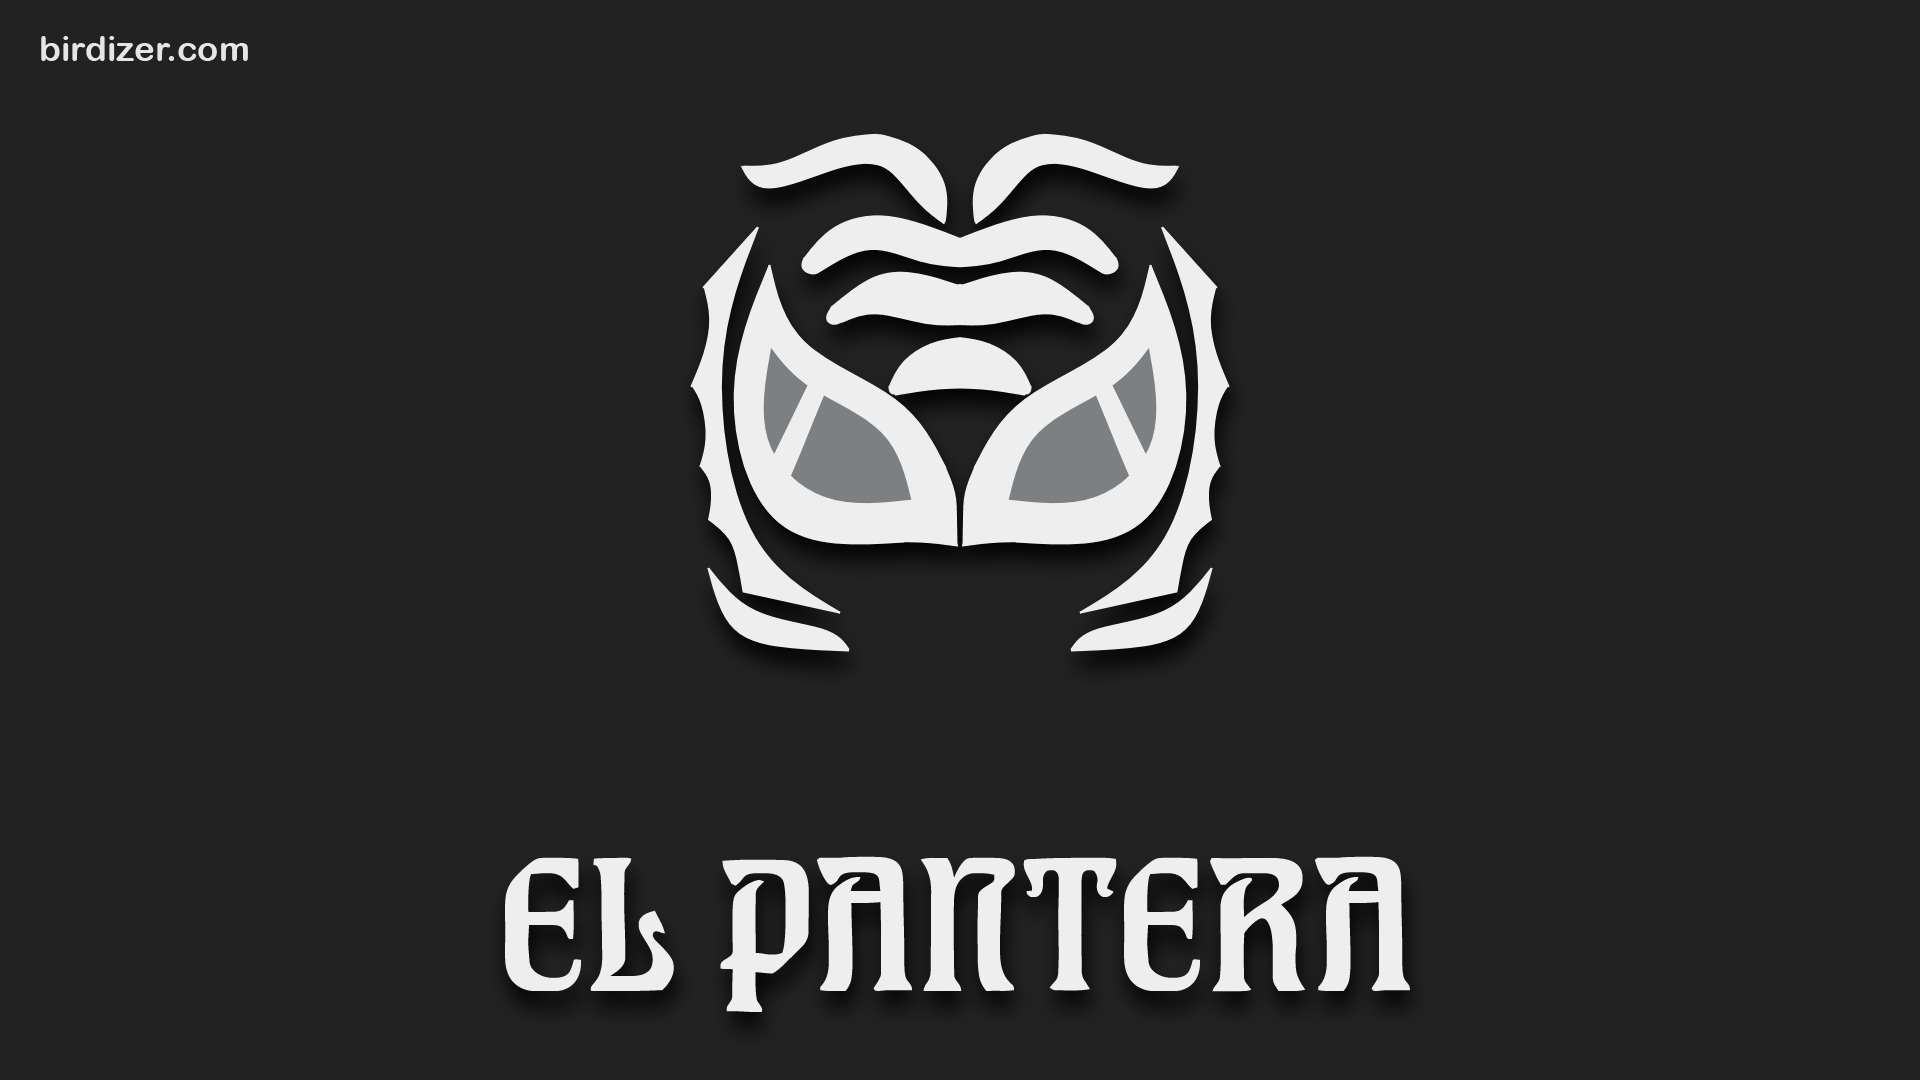 El Pantera M Scara Wallpaper Lucha Libre Mascaras Y